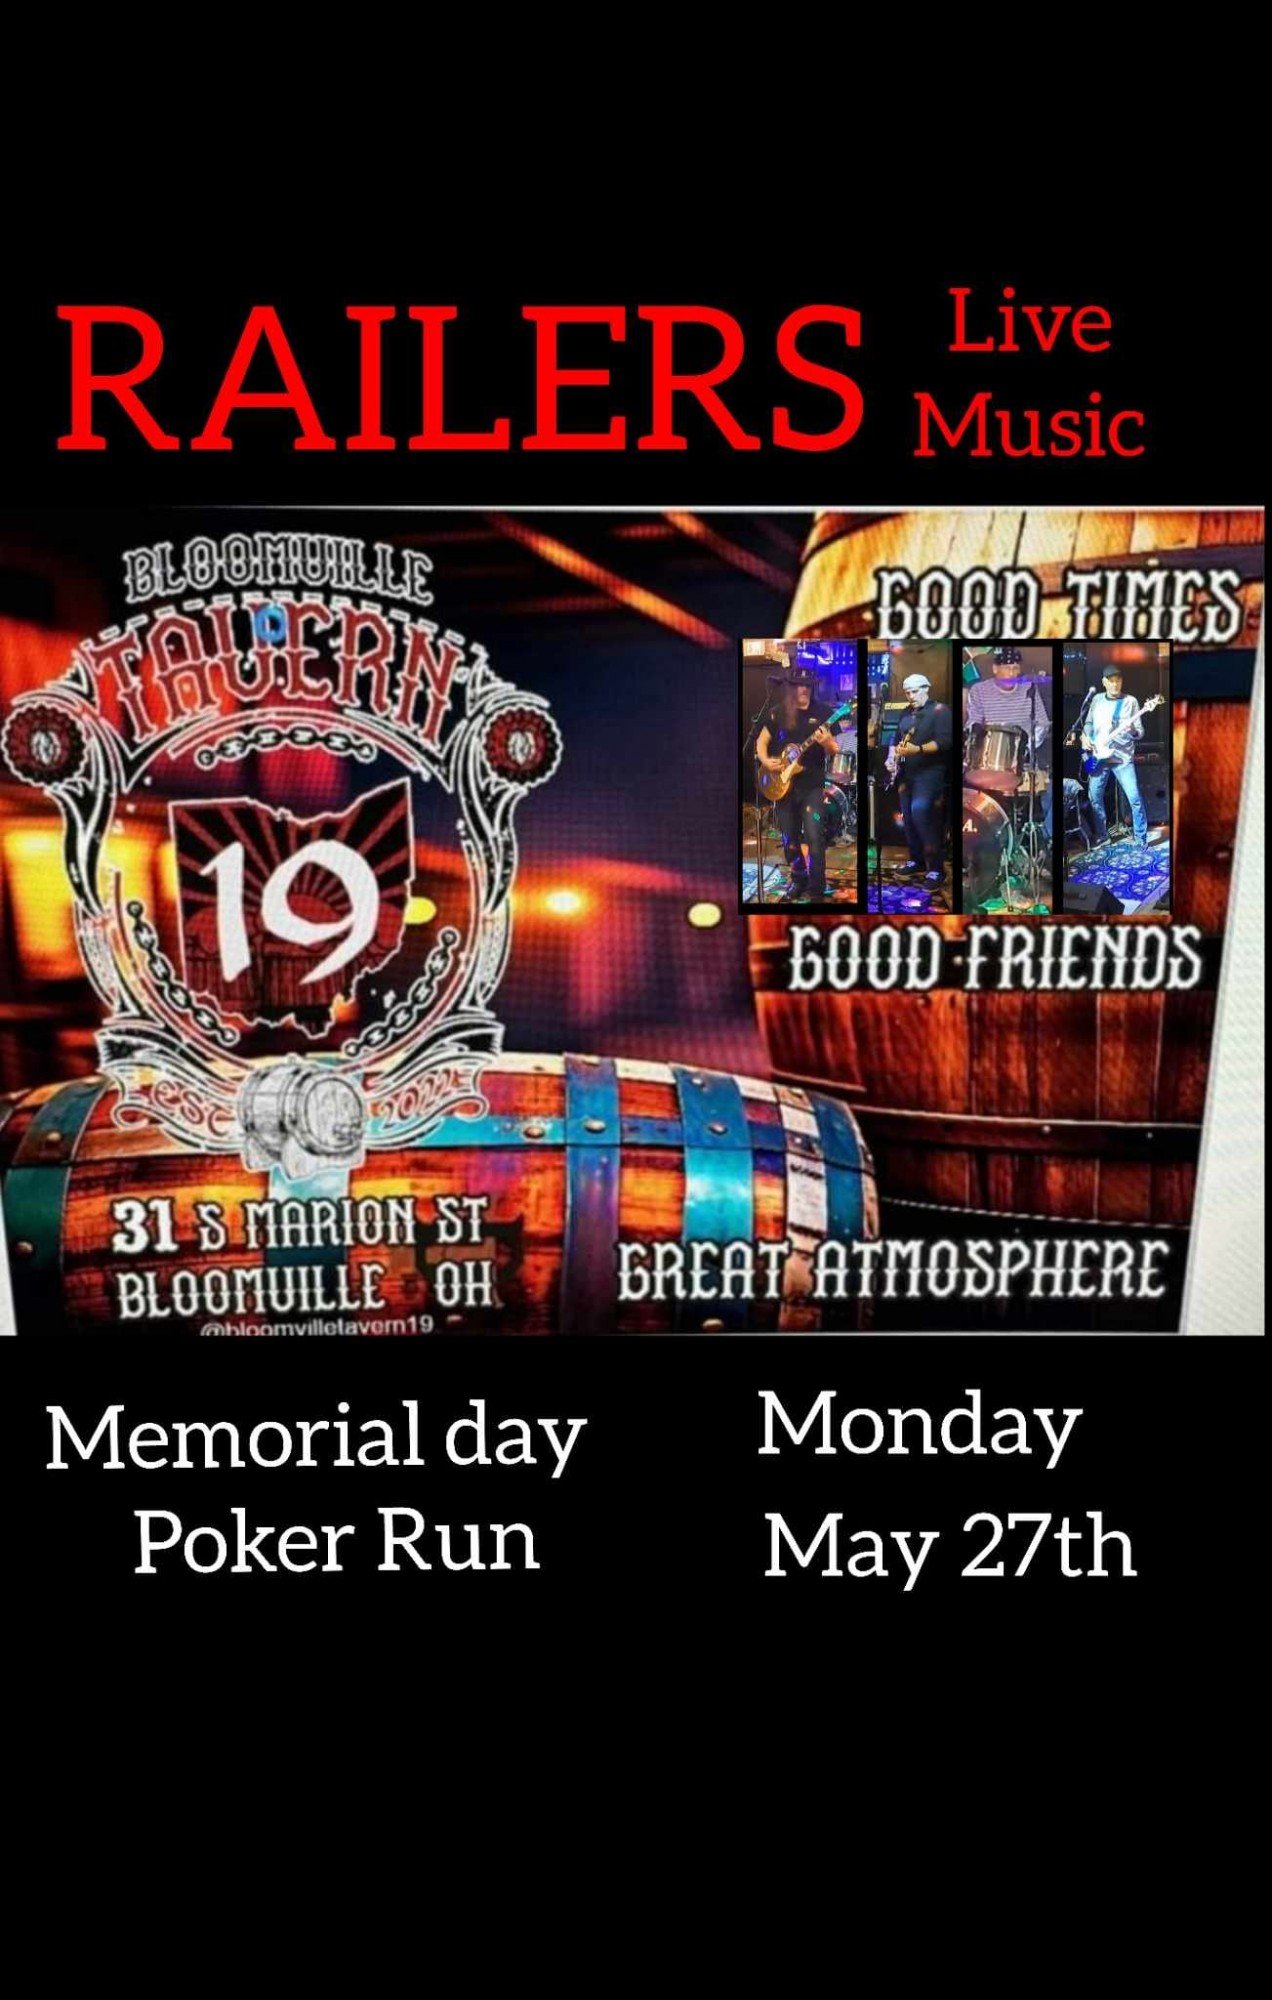 Railers Music @ Tavern 19